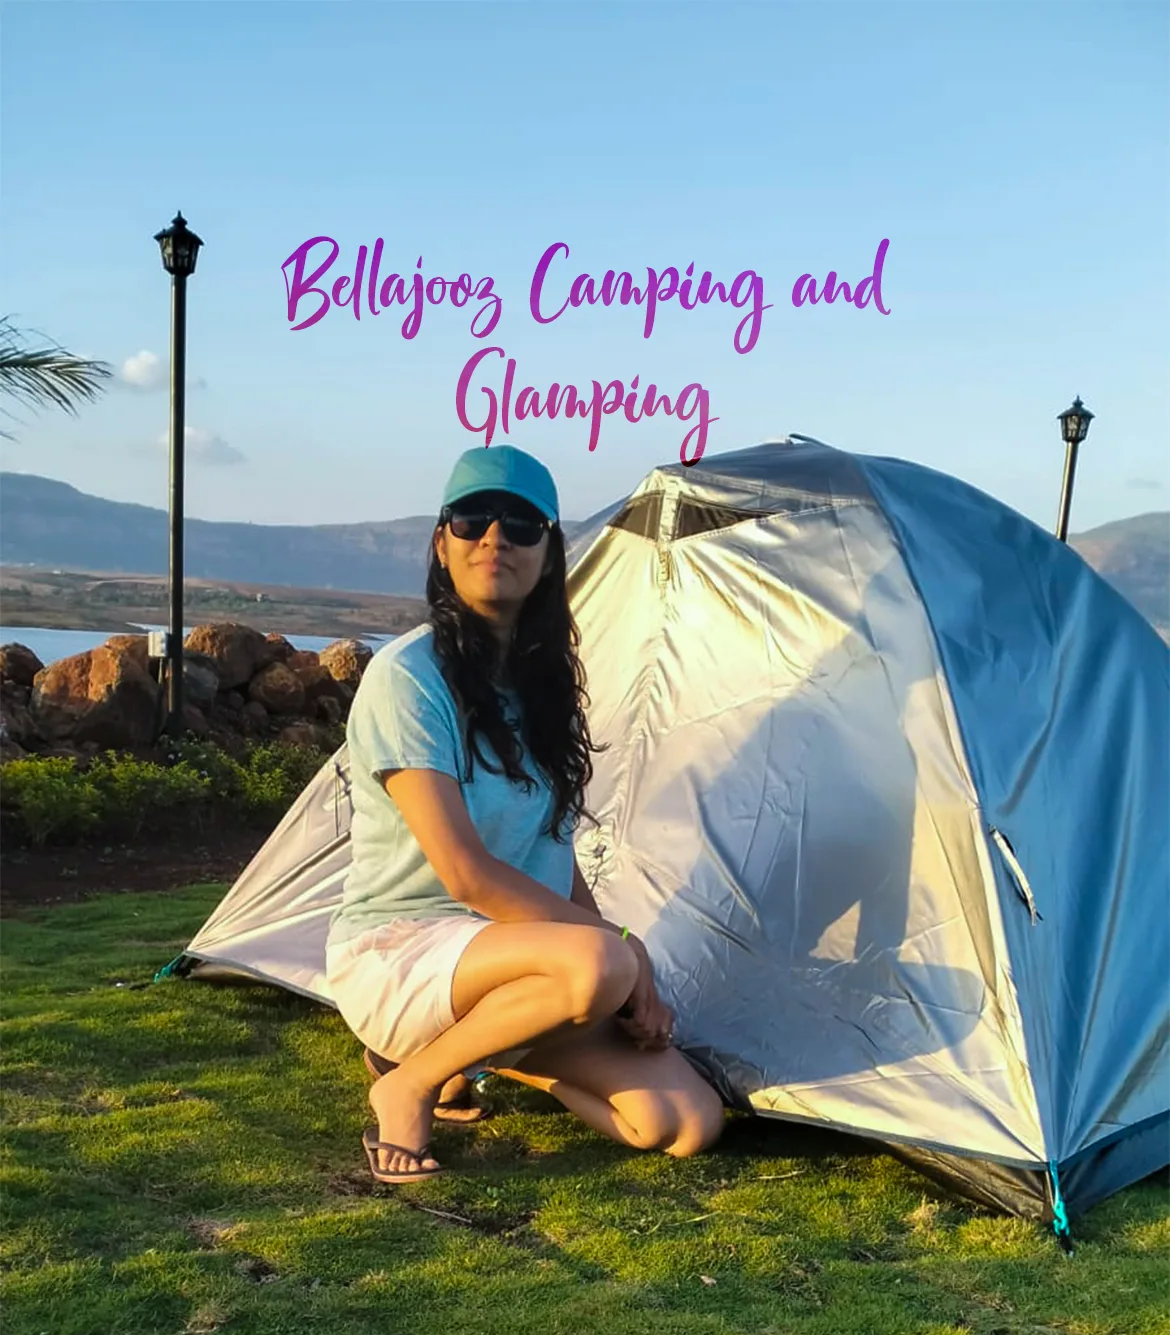 Bellajooz Camping and Glamping